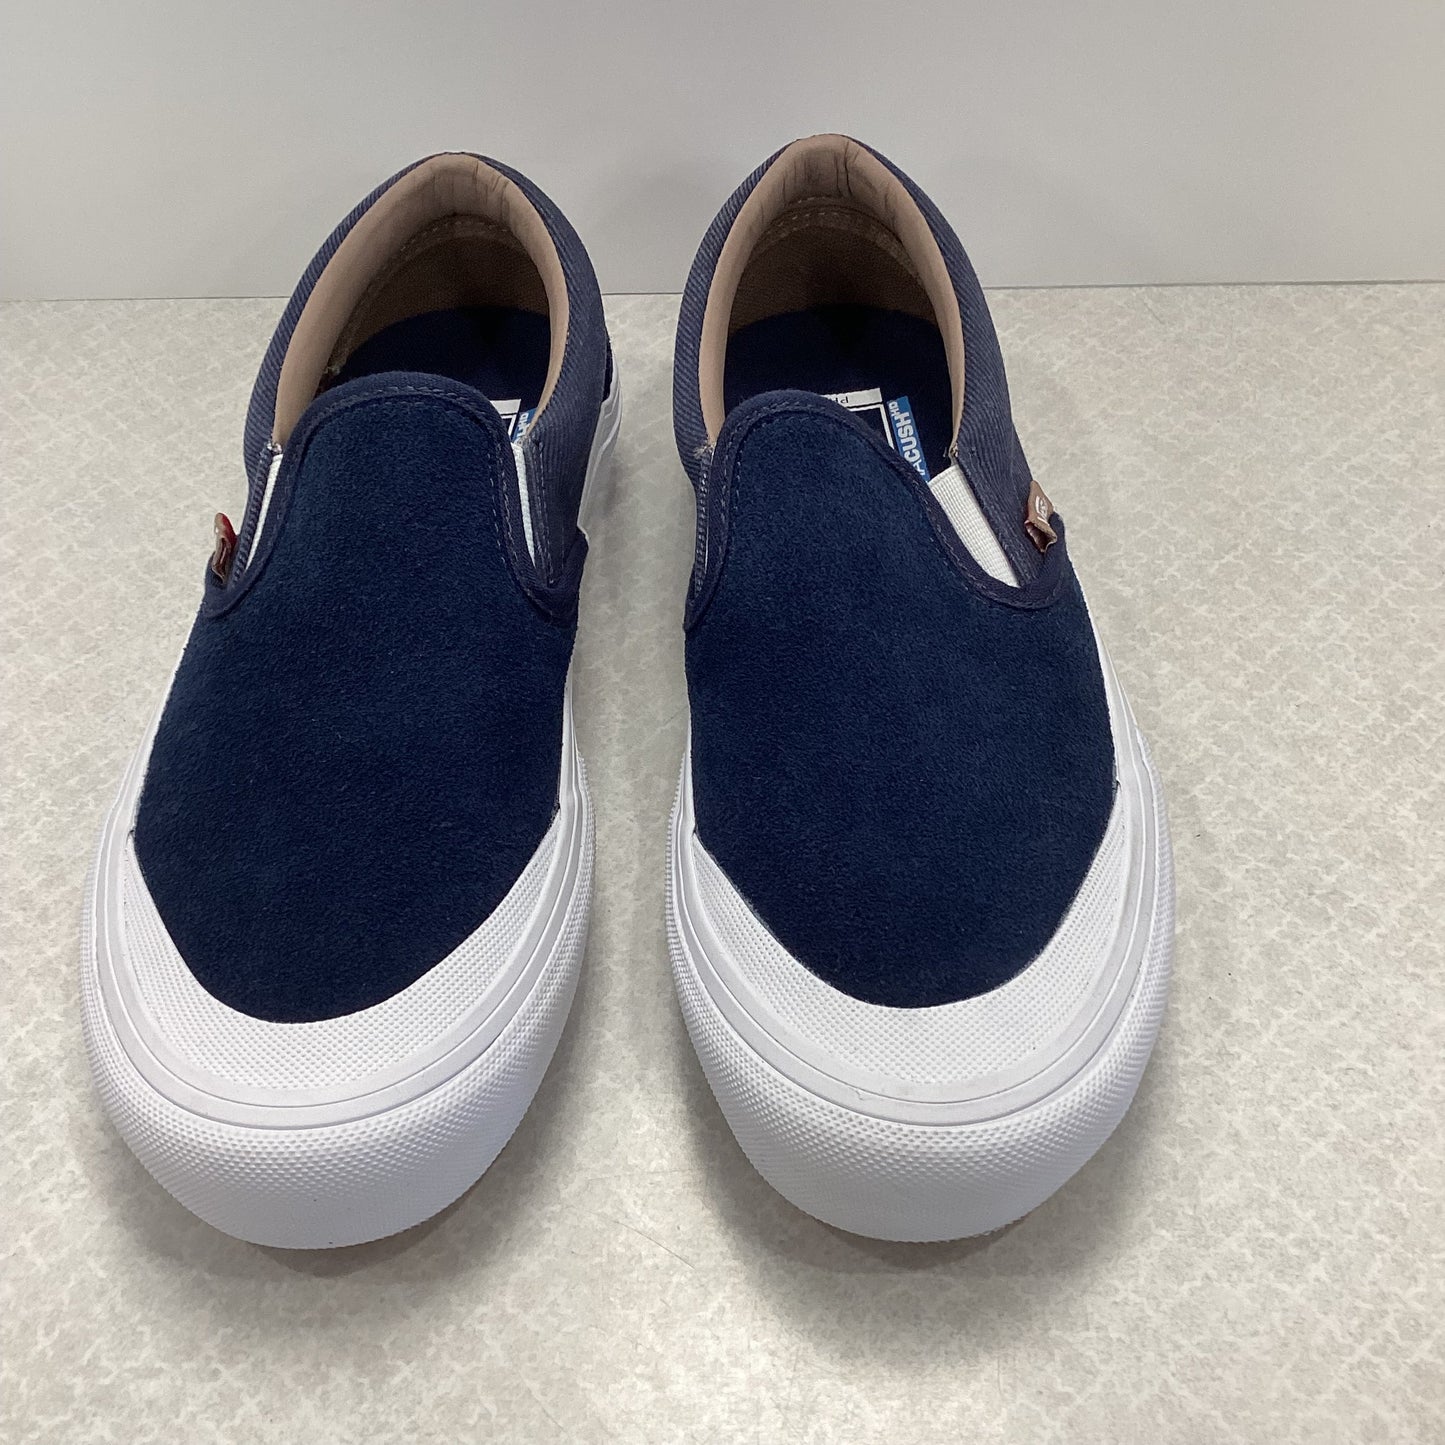 Blue Shoes Sneakers Vans, Size 8.5